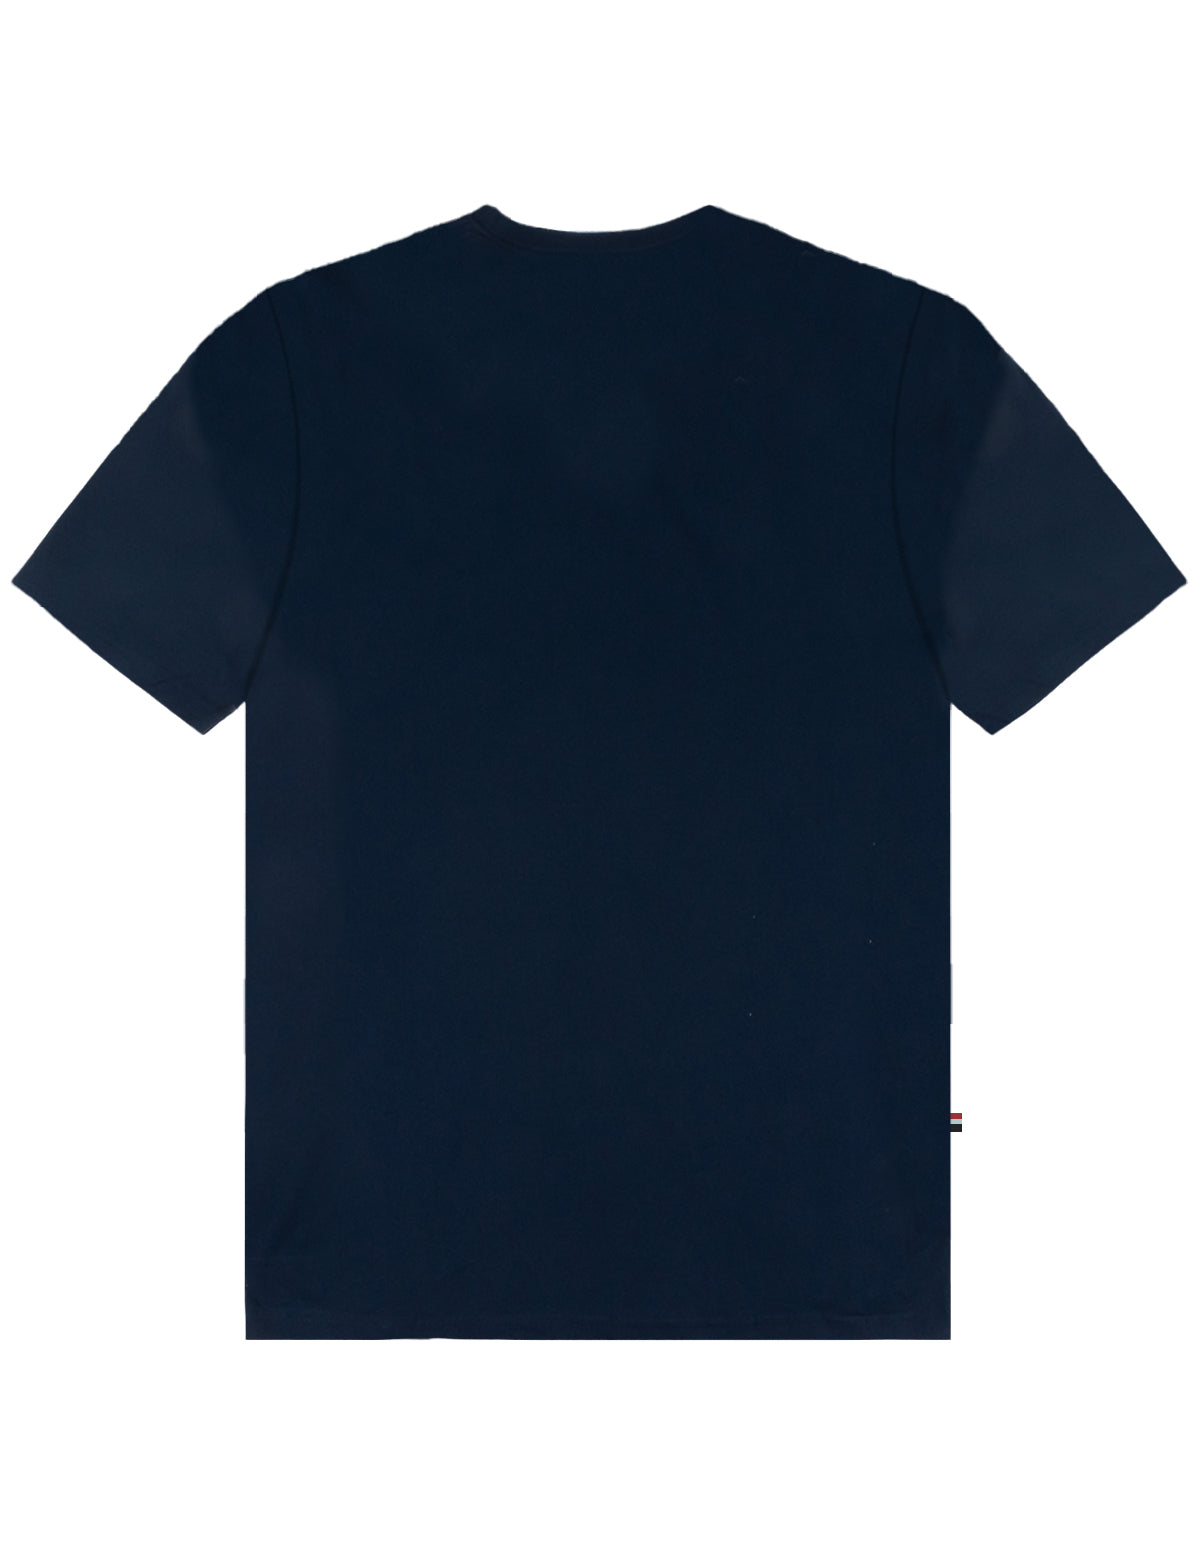 Camiseta manga larga USLTM-50-8060VA – U.S. Polo Assn. México